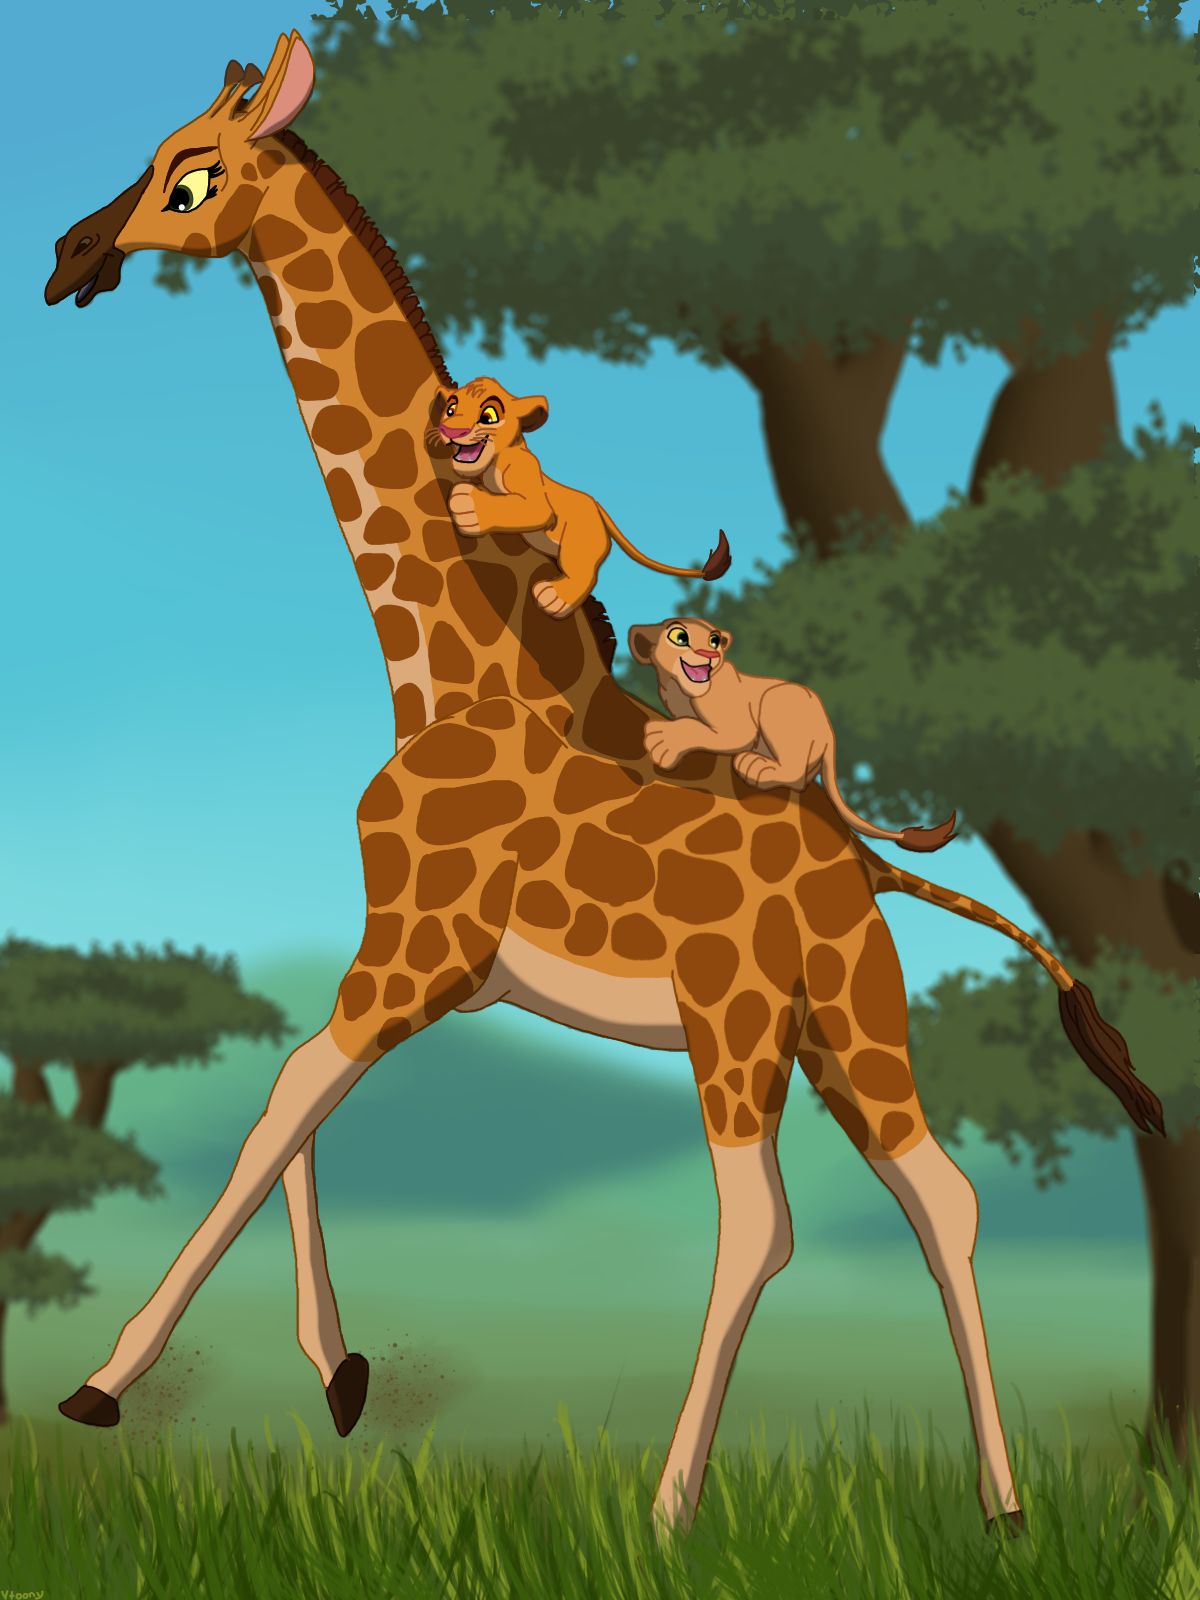 Happy World Giraffe Day By Vtoony On Deviantart